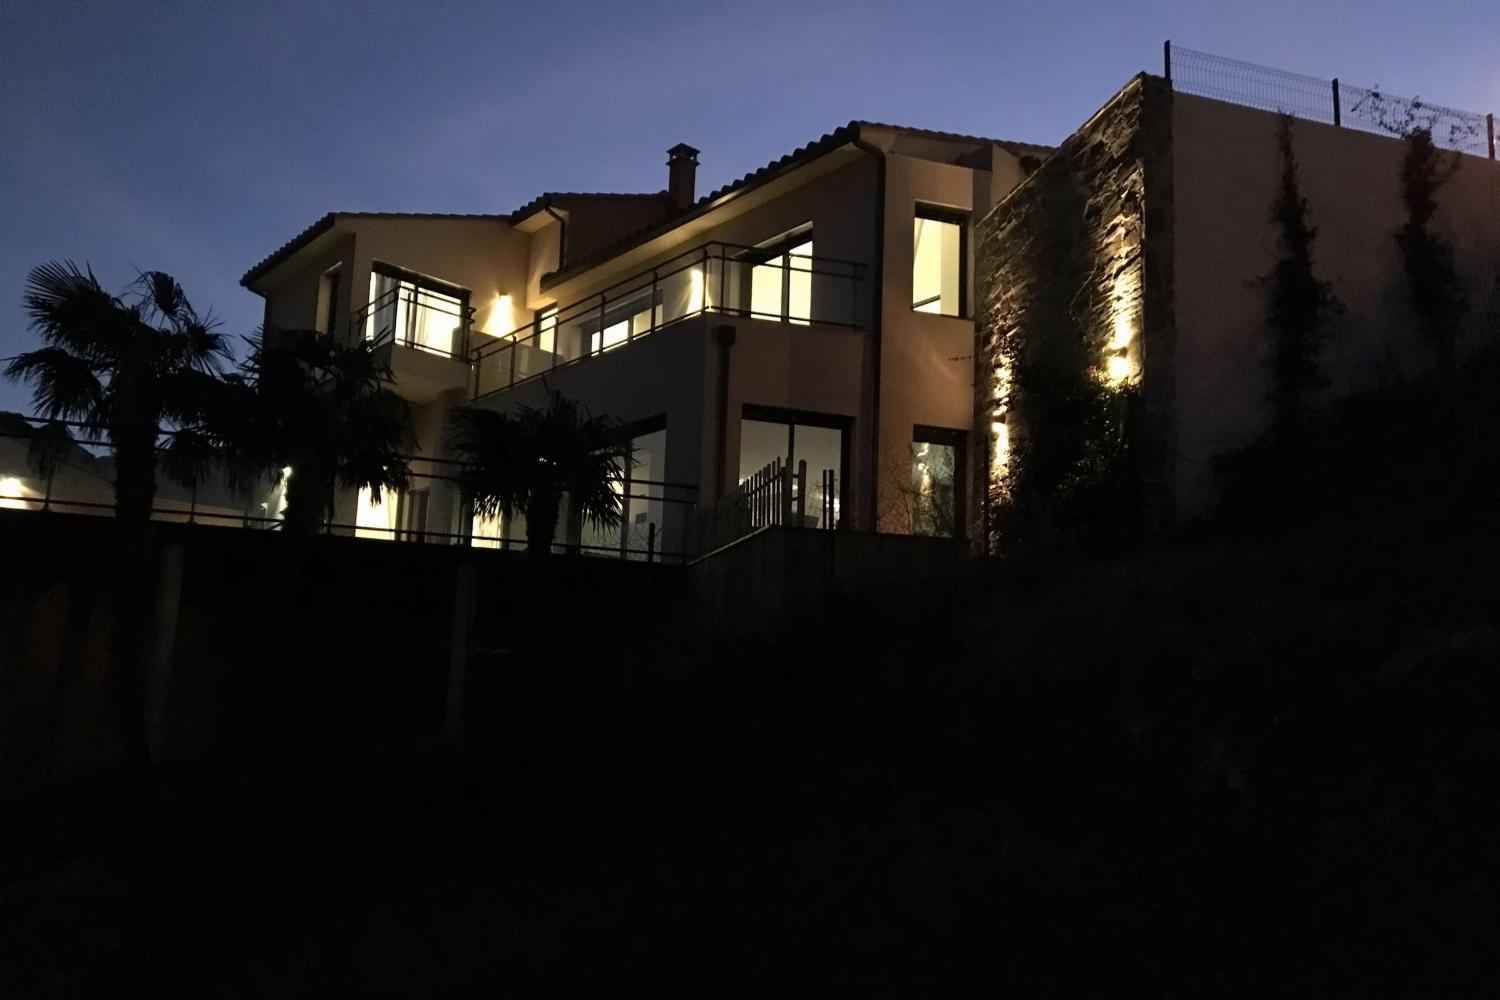 Villa de vacances à Collioure la nuit